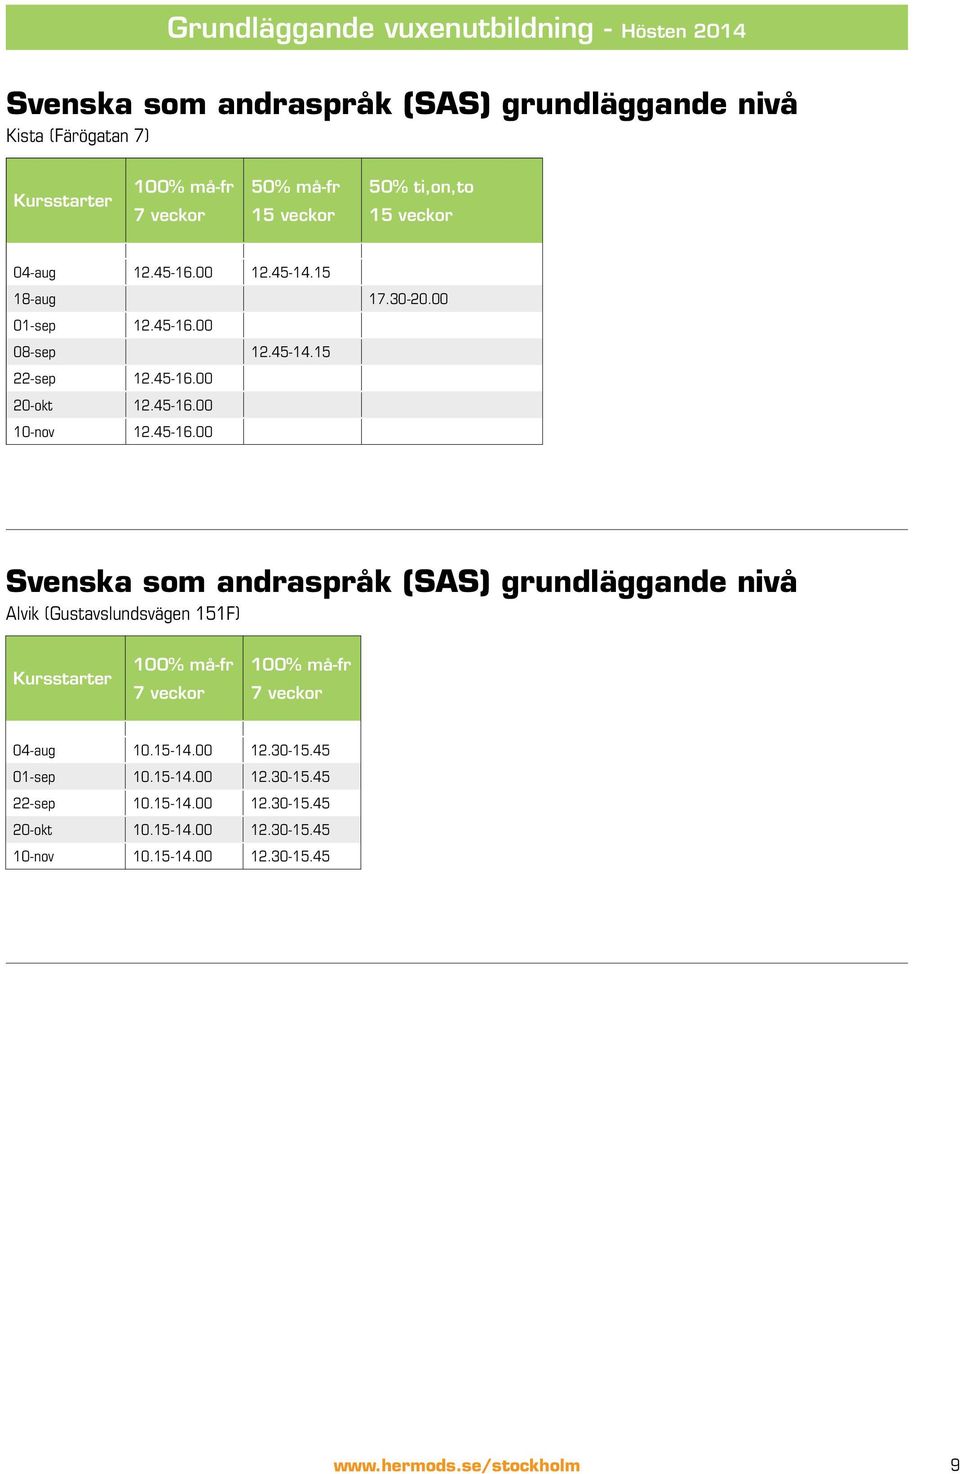 45-16.00 Svenska som andraspråk (SAS) grundläggande nivå Alvik (Gustavslundsvägen 151F) Kursstarter 100% må-fr 7 veckor 100% må-fr 7 veckor 04-aug 10.15-14.